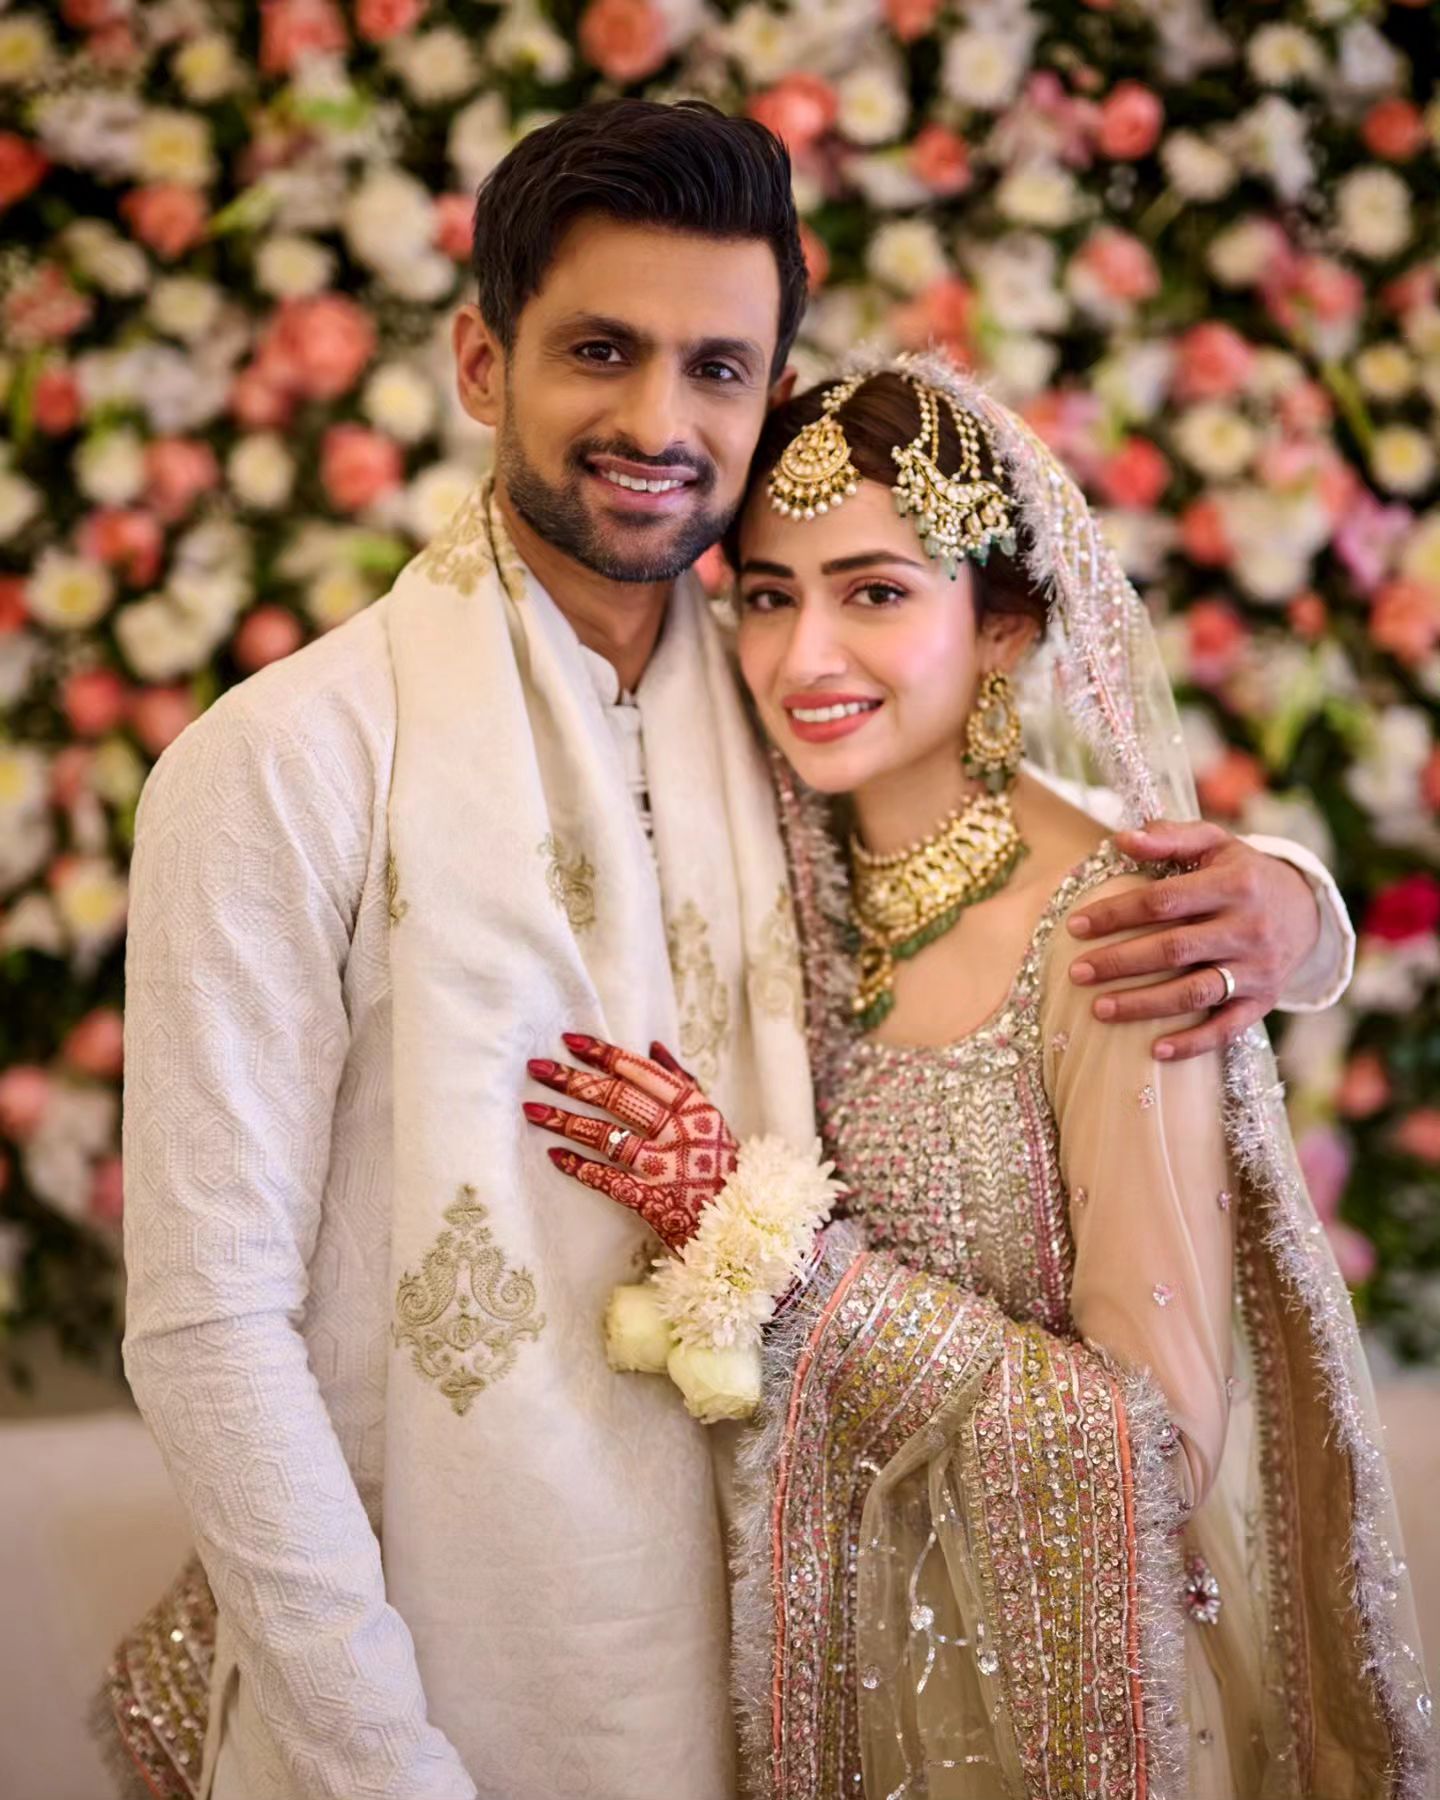 Sana javed married with Shoaib Akhtar